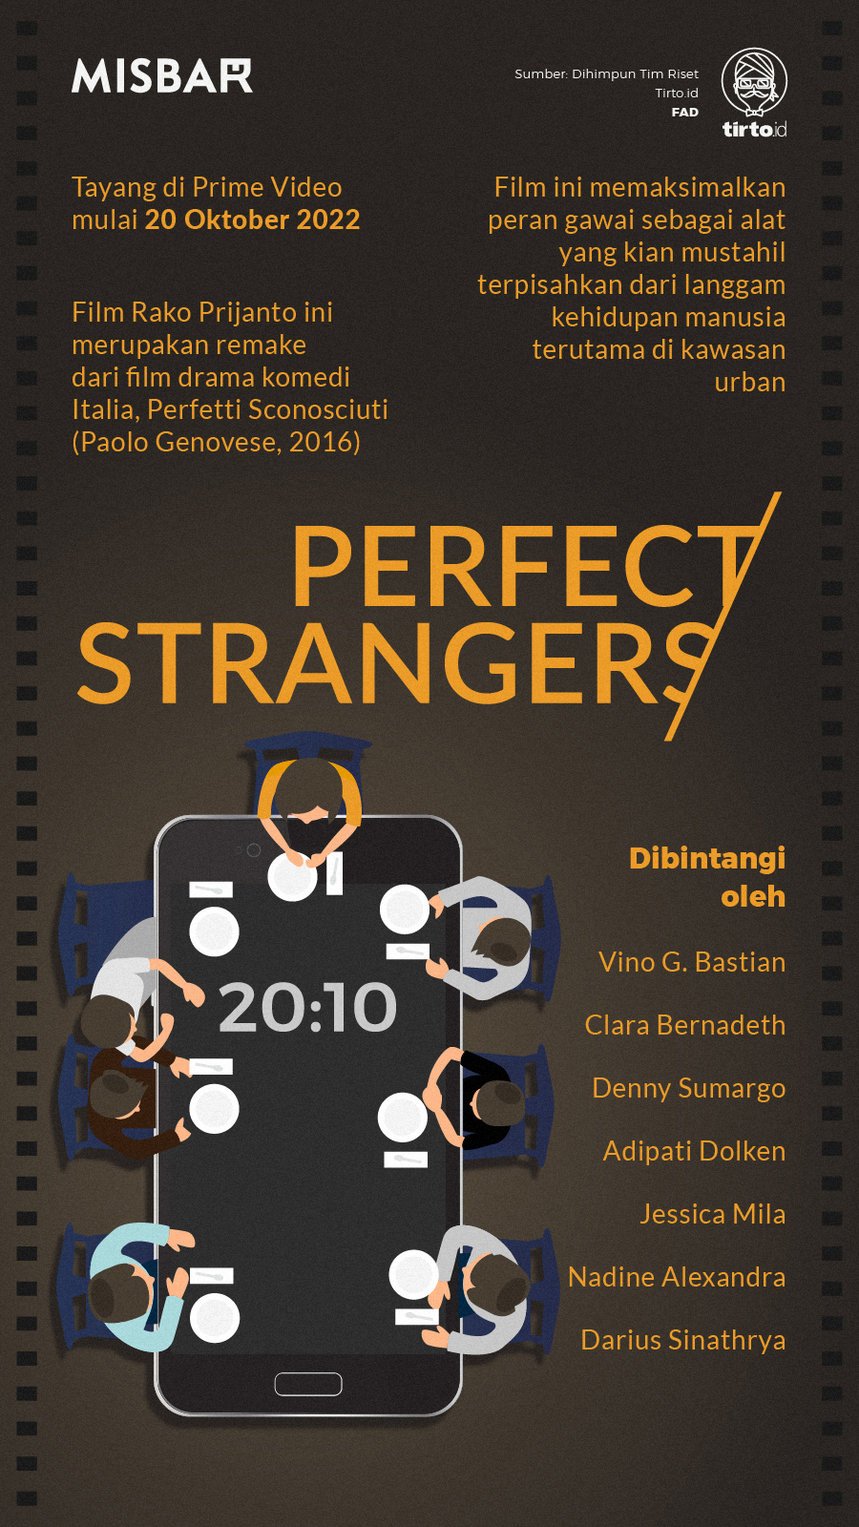 Infografik Misbar Perfect Stranger